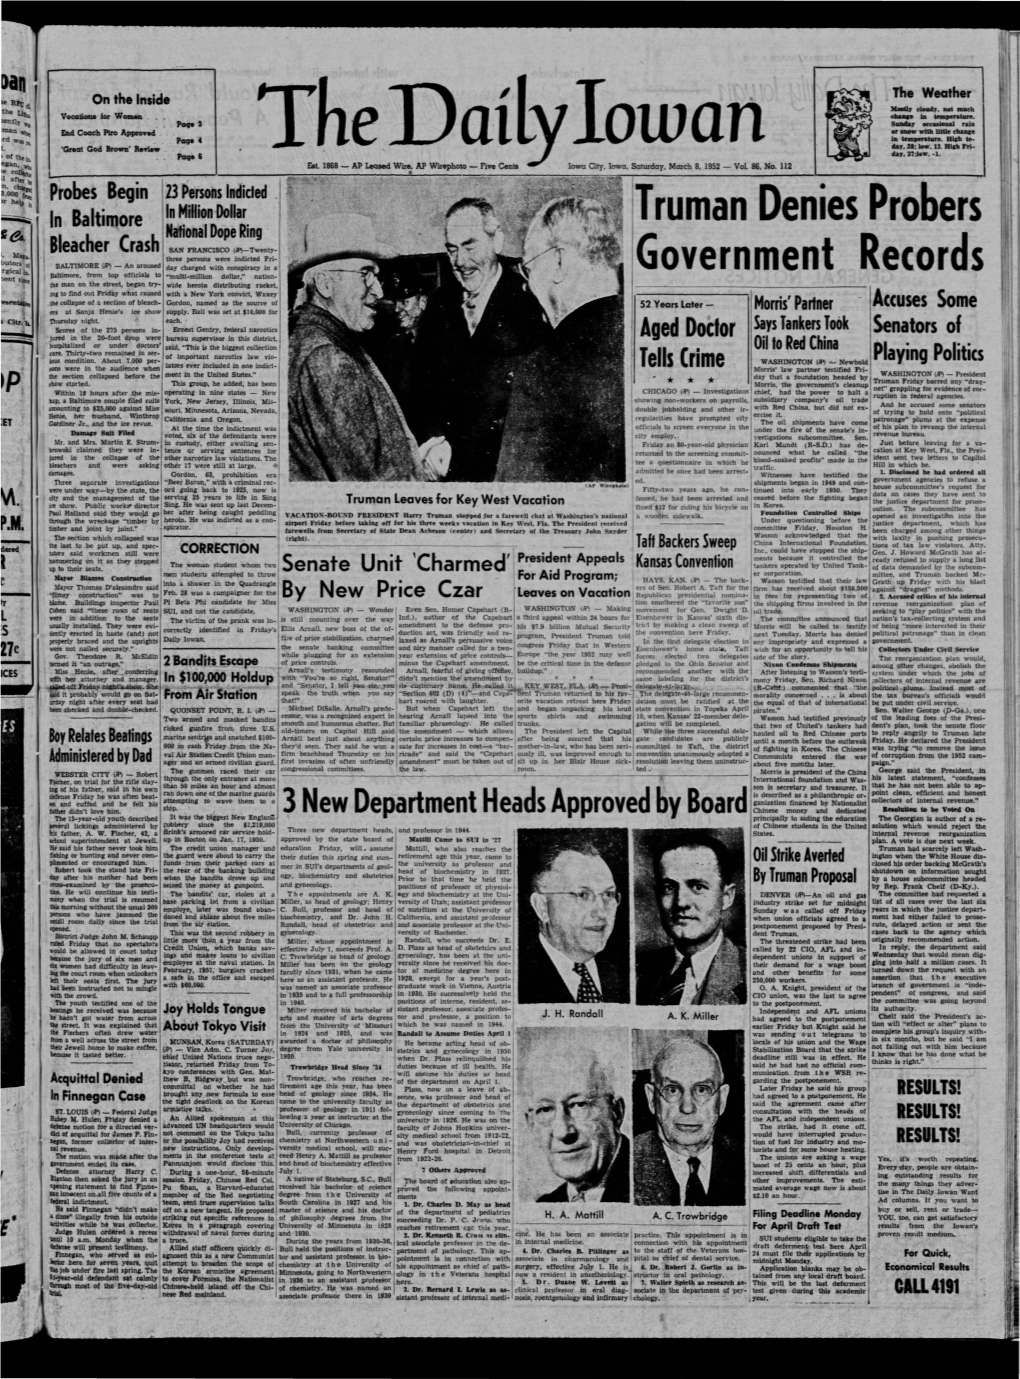 Daily Iowan (Iowa City, Iowa), 1952-03-08